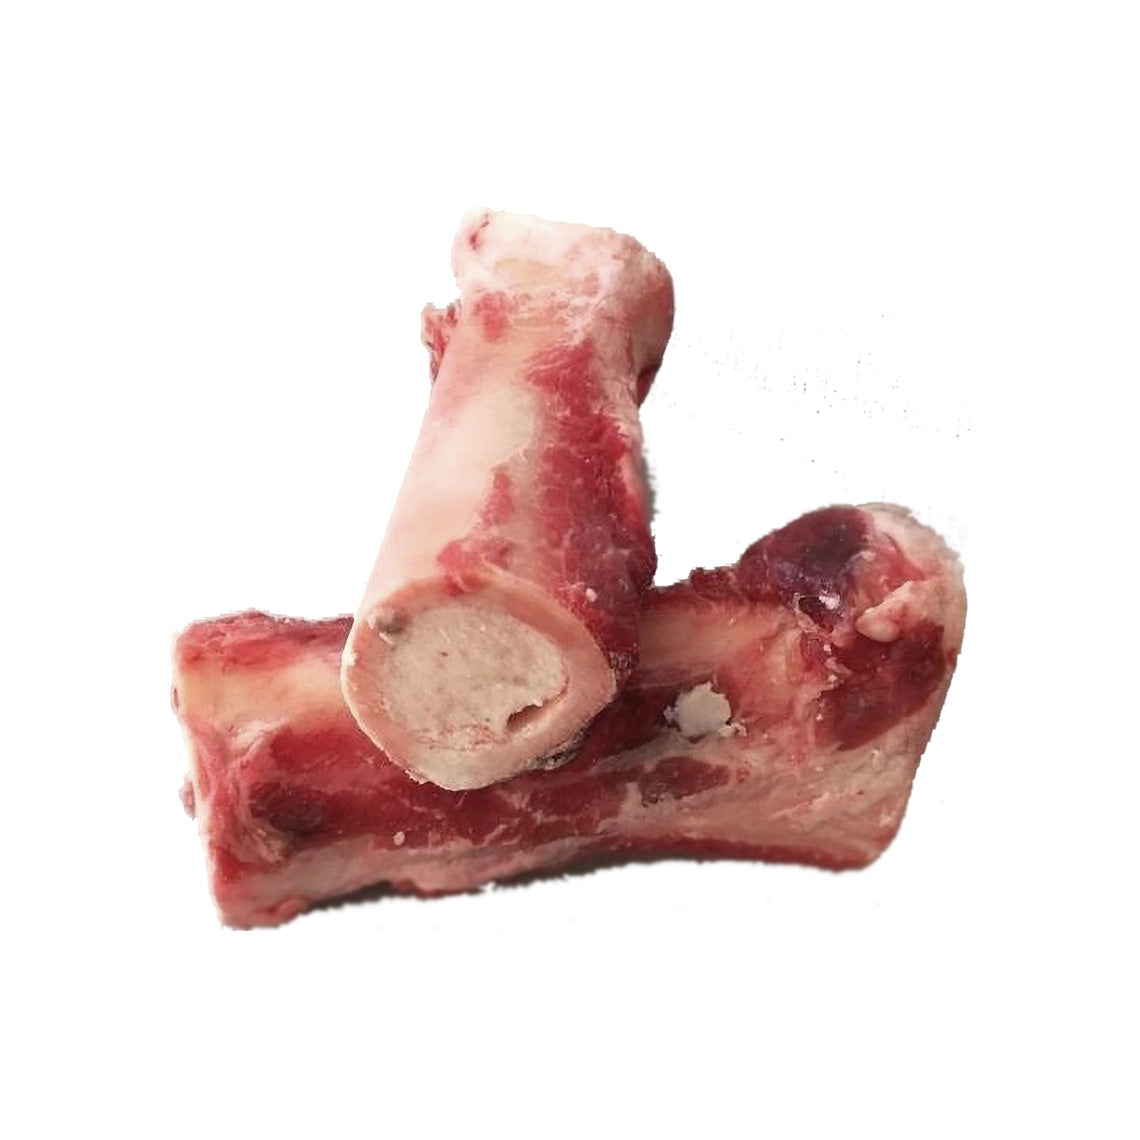 cow femur bone for dogs